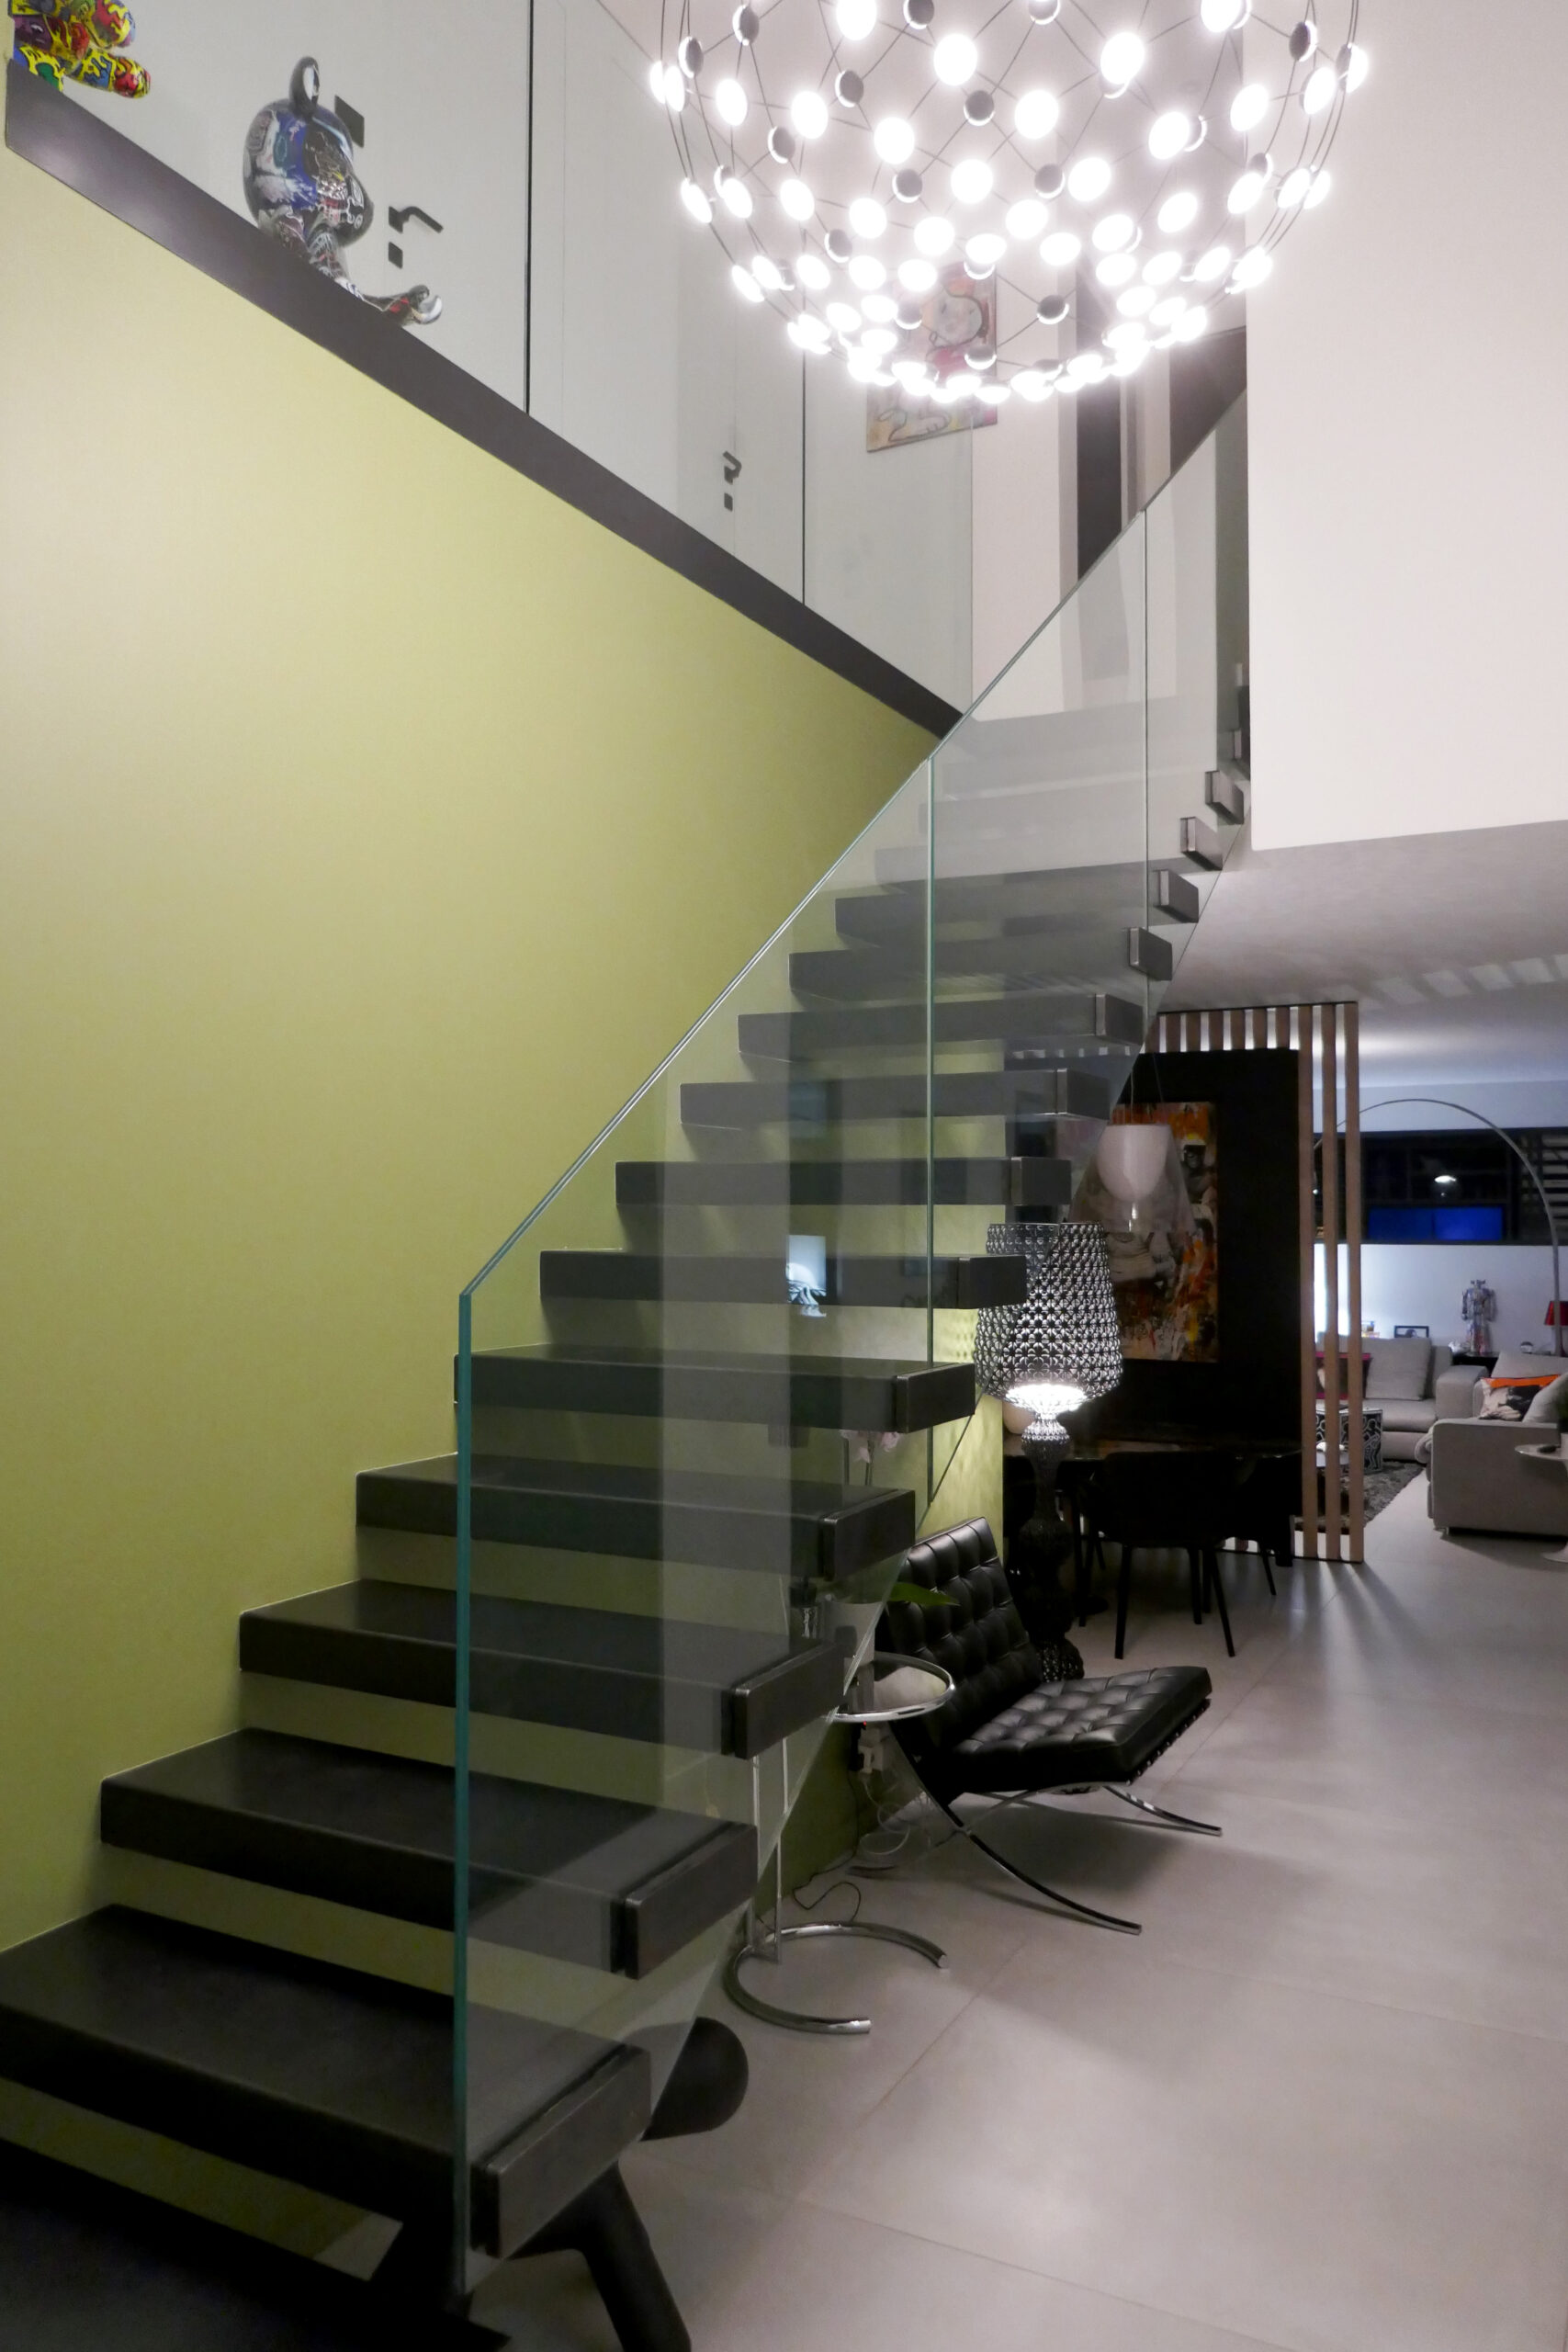 "Superbe escalier métallique sur mesure, doté de marches en verre, créé par un artisan métallier lyonnais dans le département du Rhône, illustrant une réalisation haut de gamme installée dans un salon."